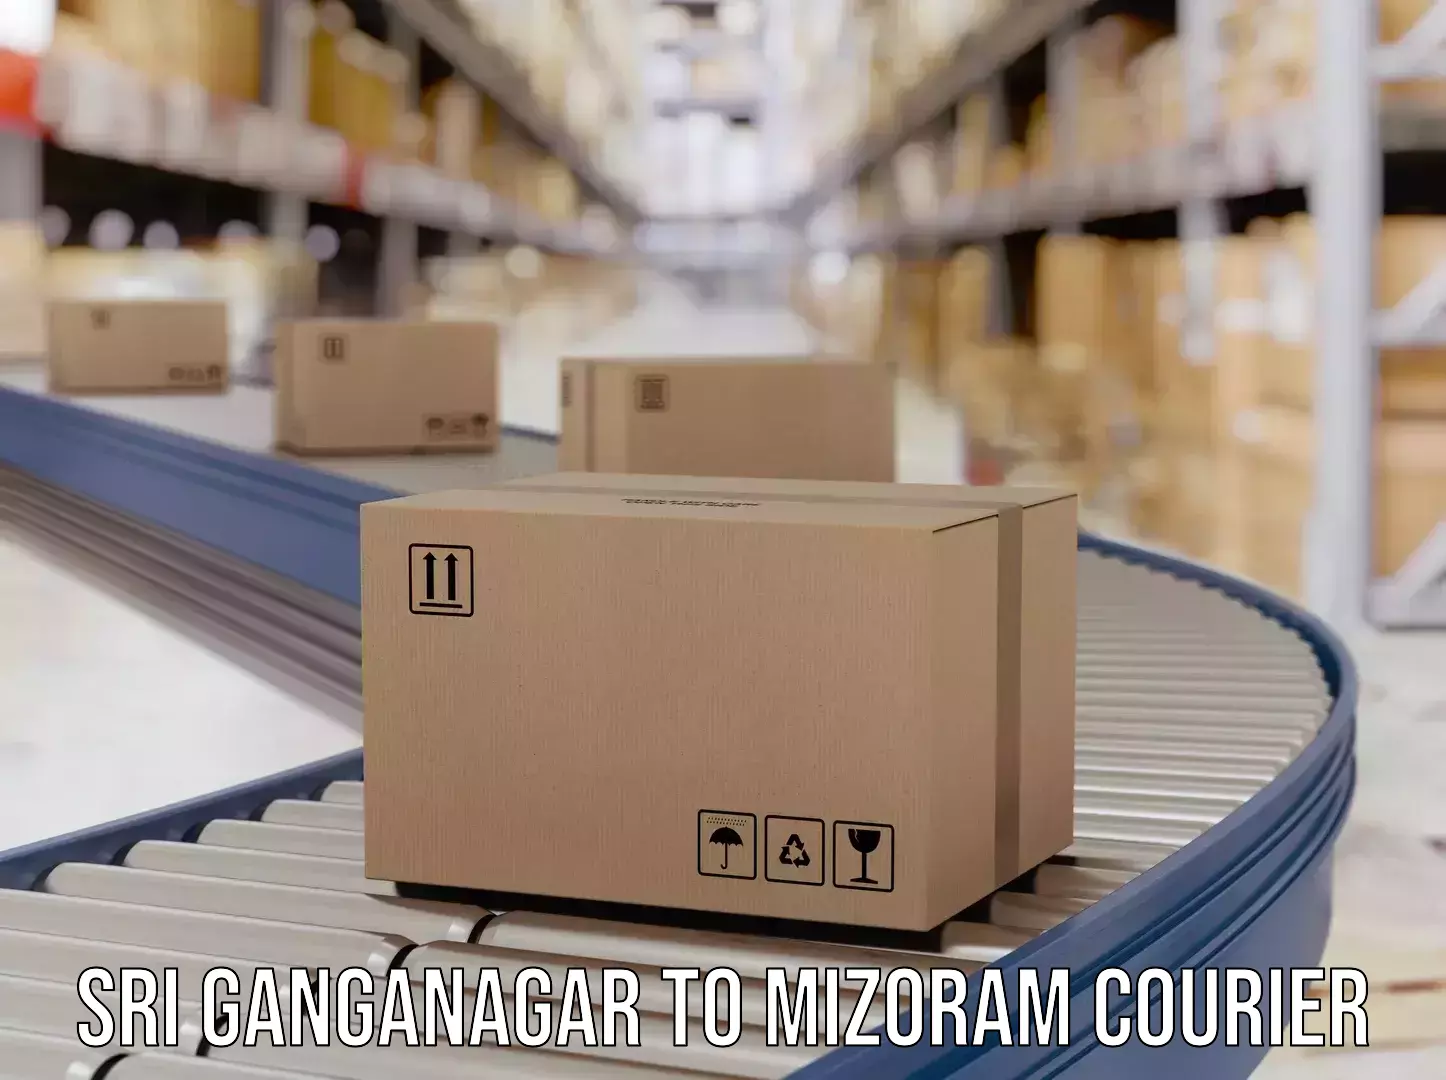 Flexible parcel services Sri Ganganagar to Siaha